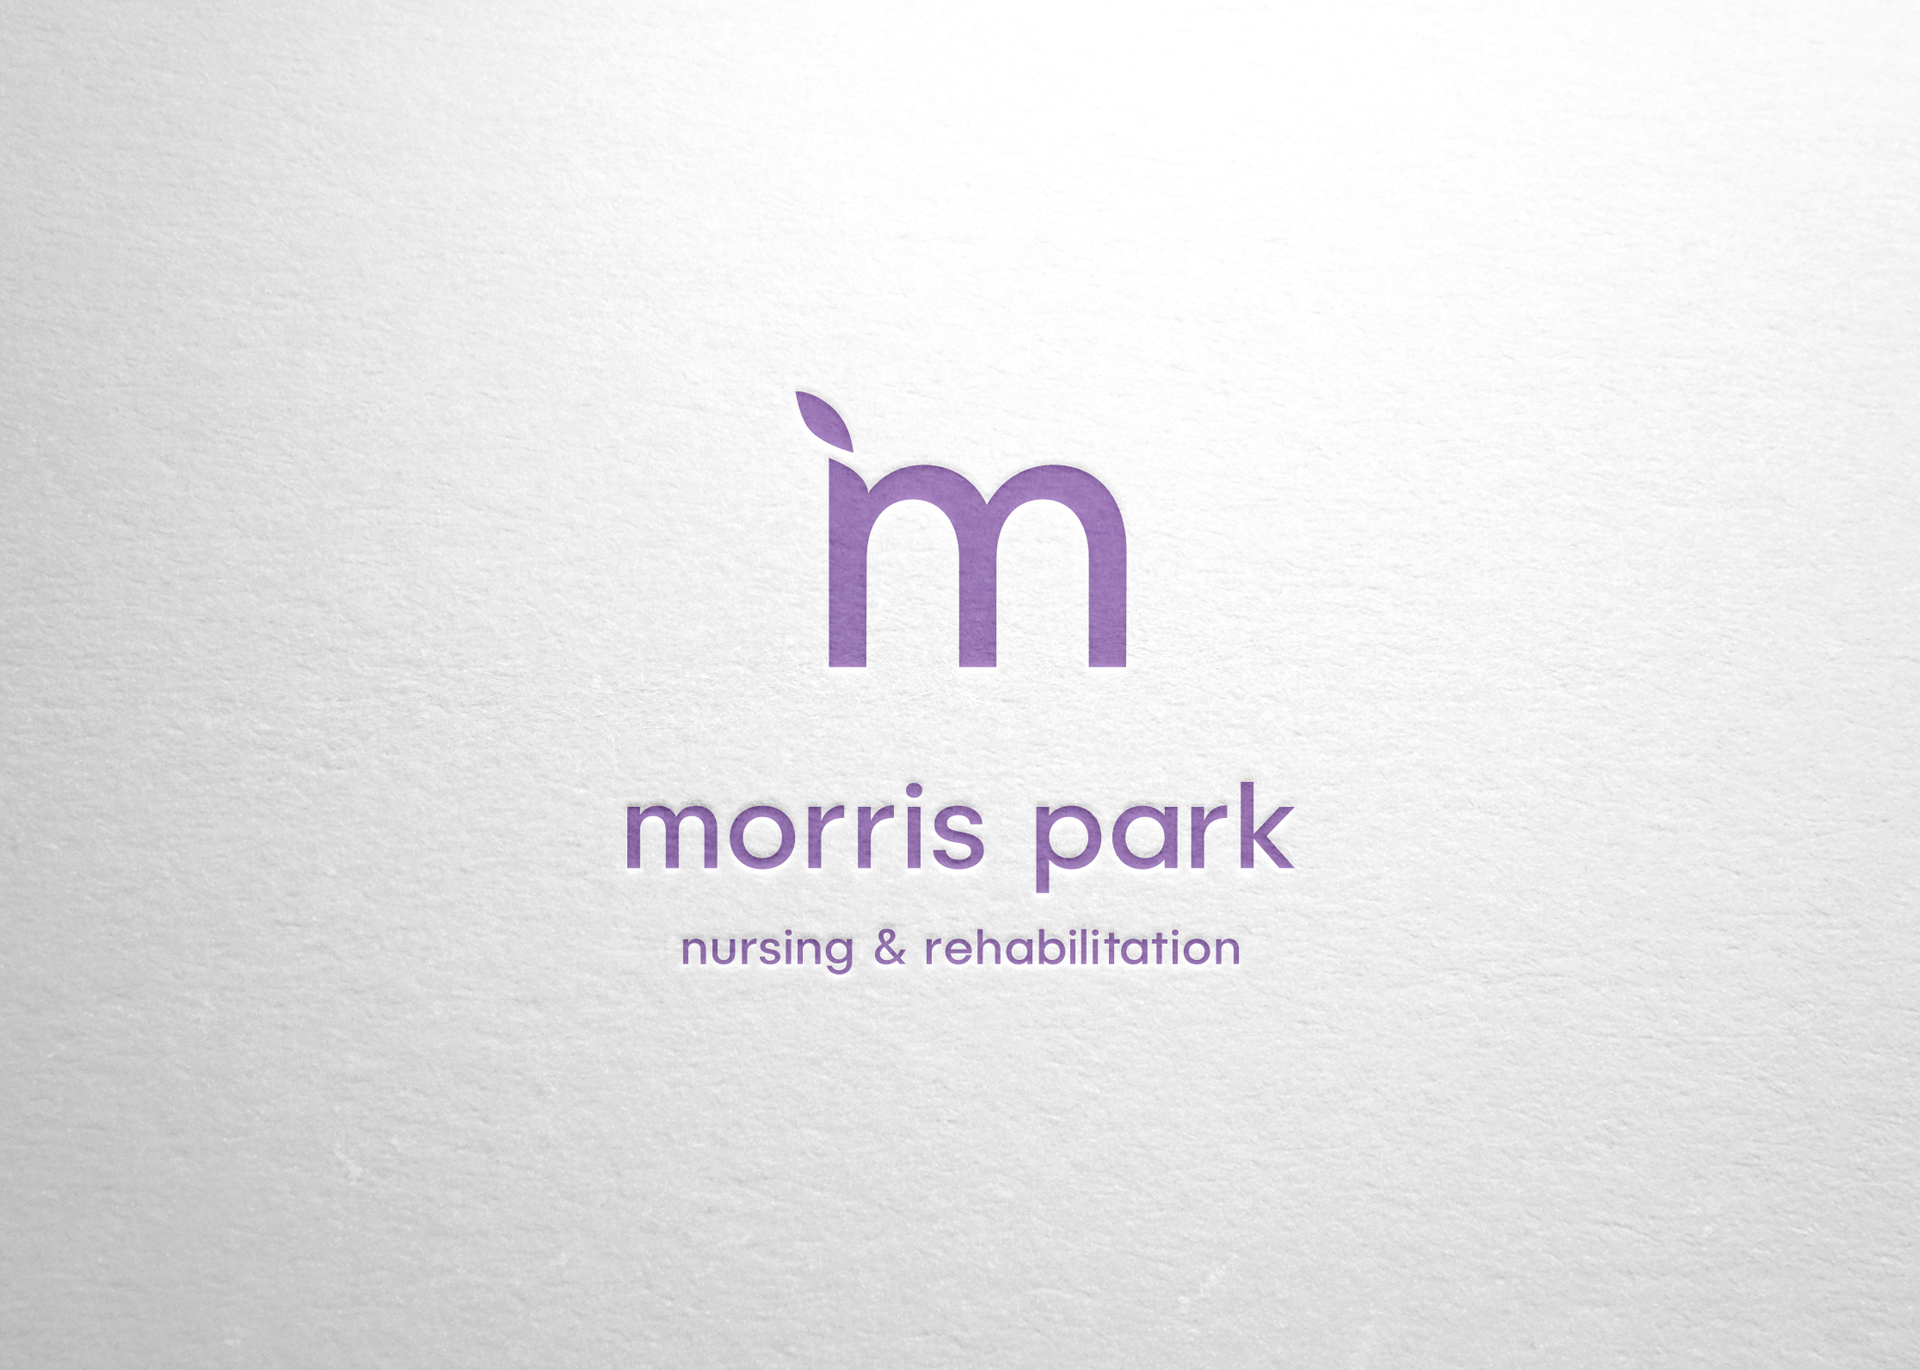 MorrisPark_1 newb